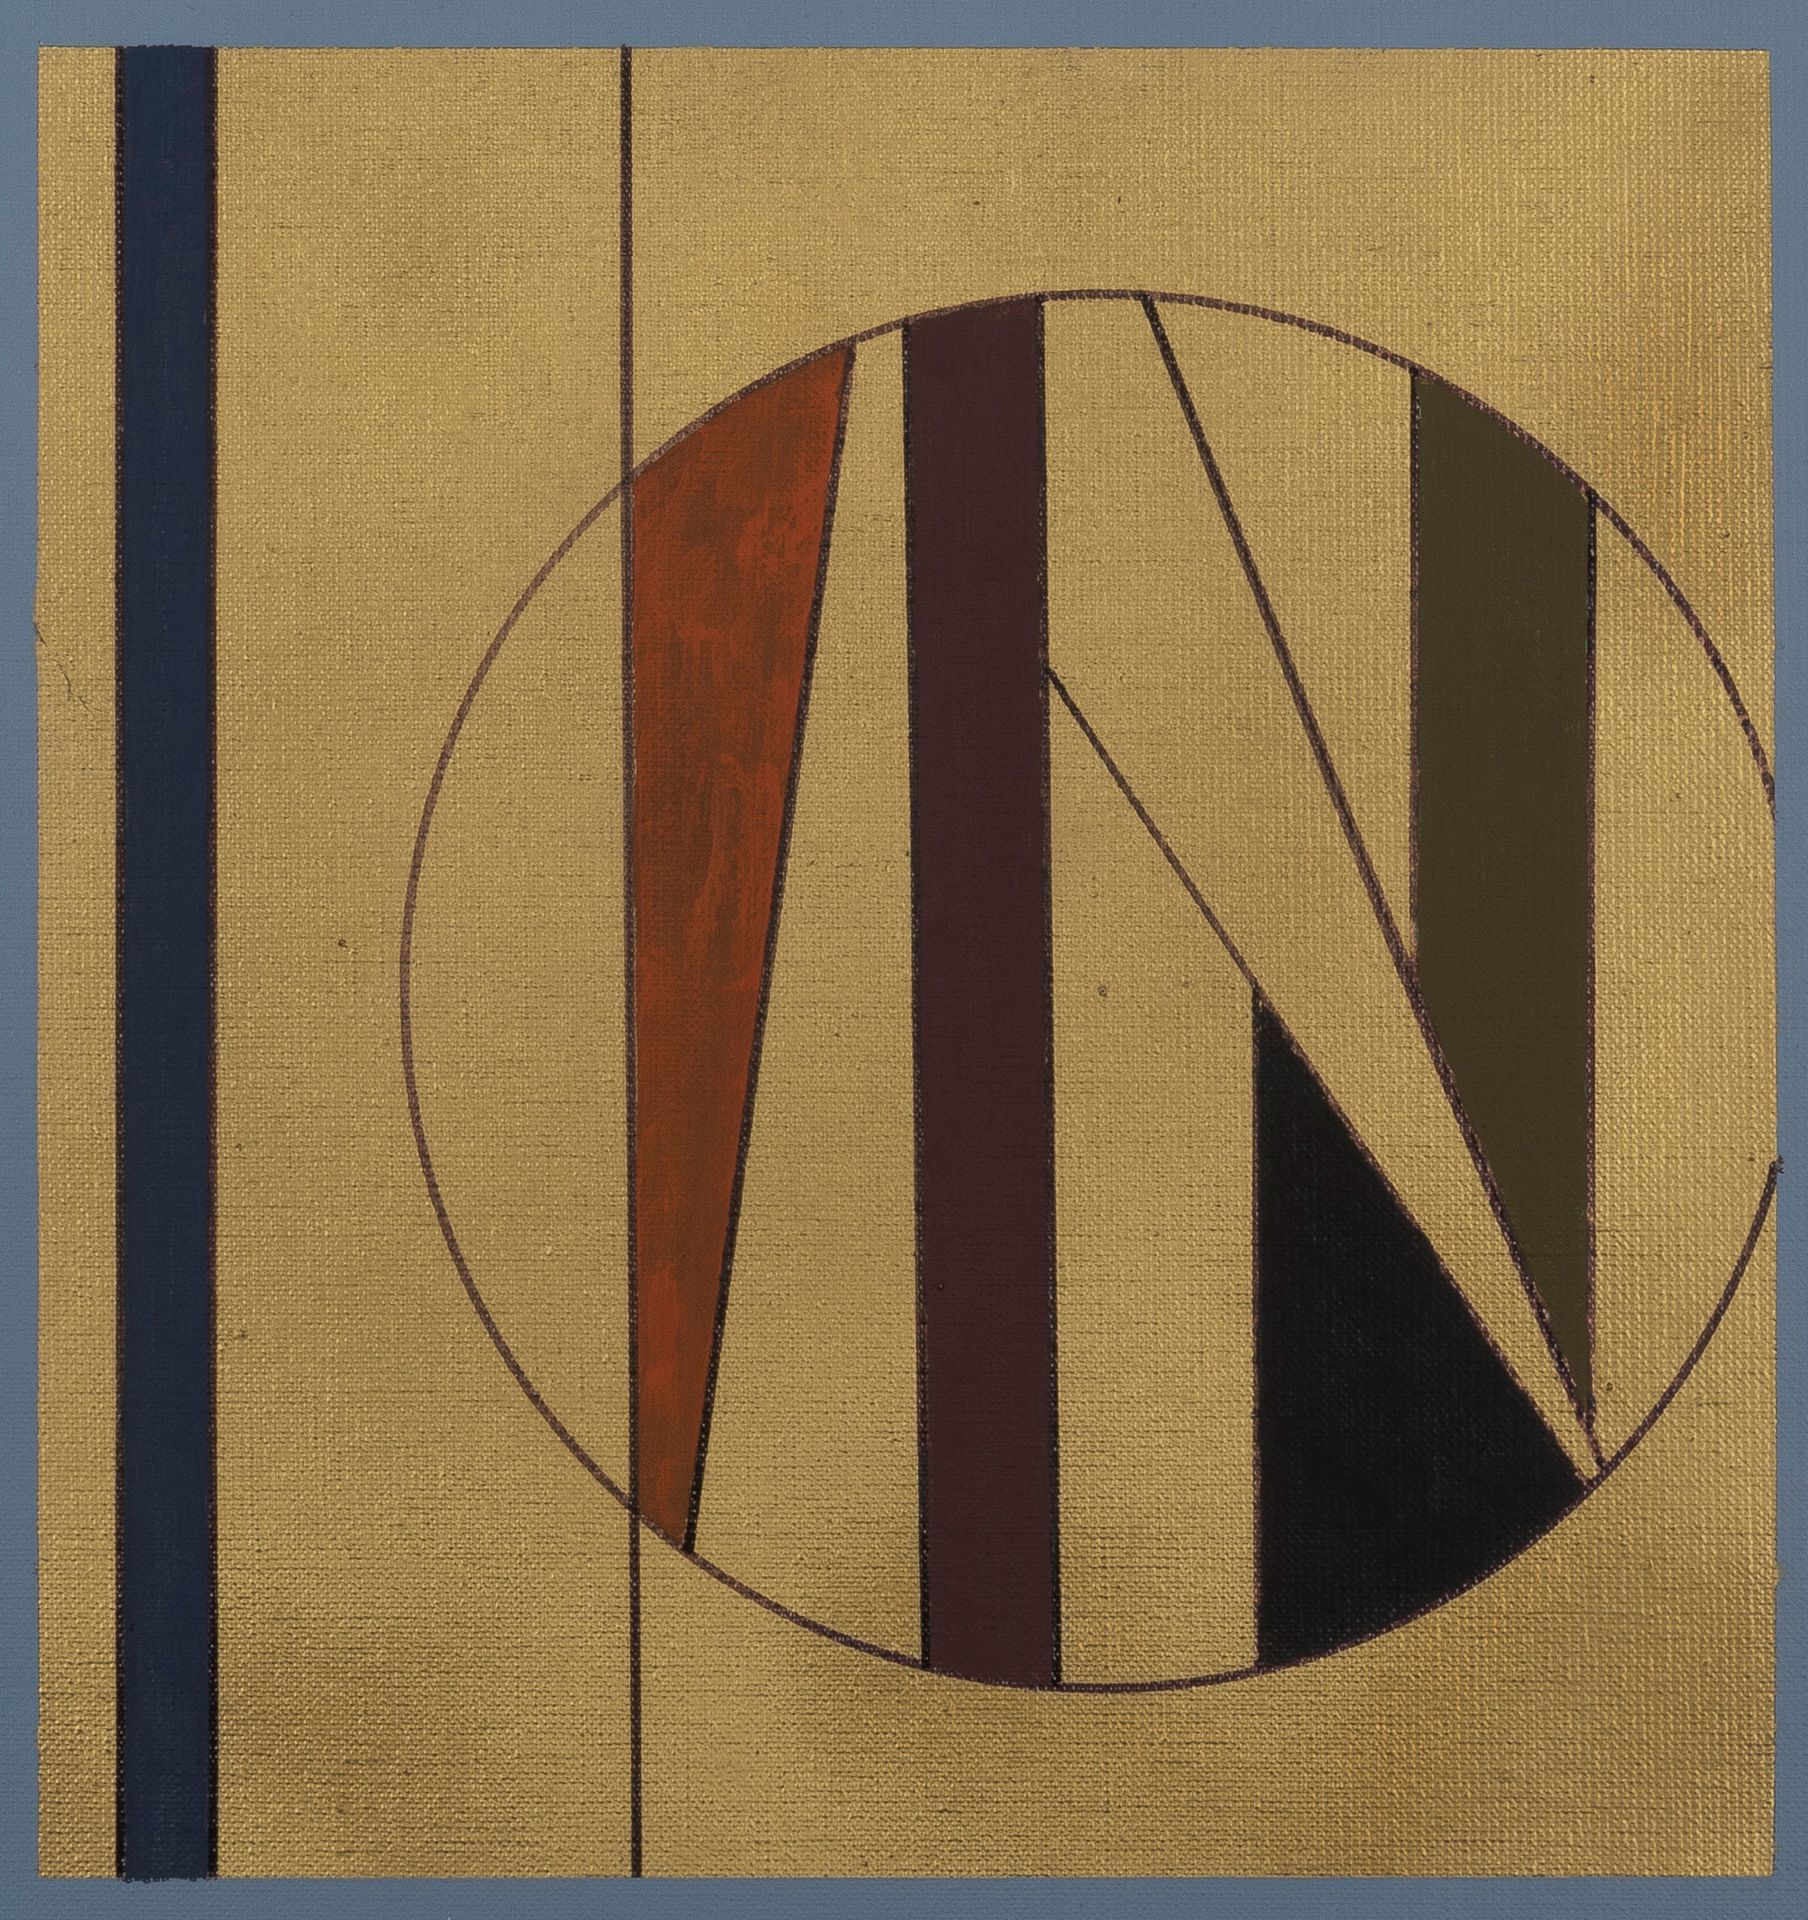 GUY VANDENBRANDEN (1926-2014) Composición abstracta, 2001
Óleo sobre lienzo.
Fir&hellip;